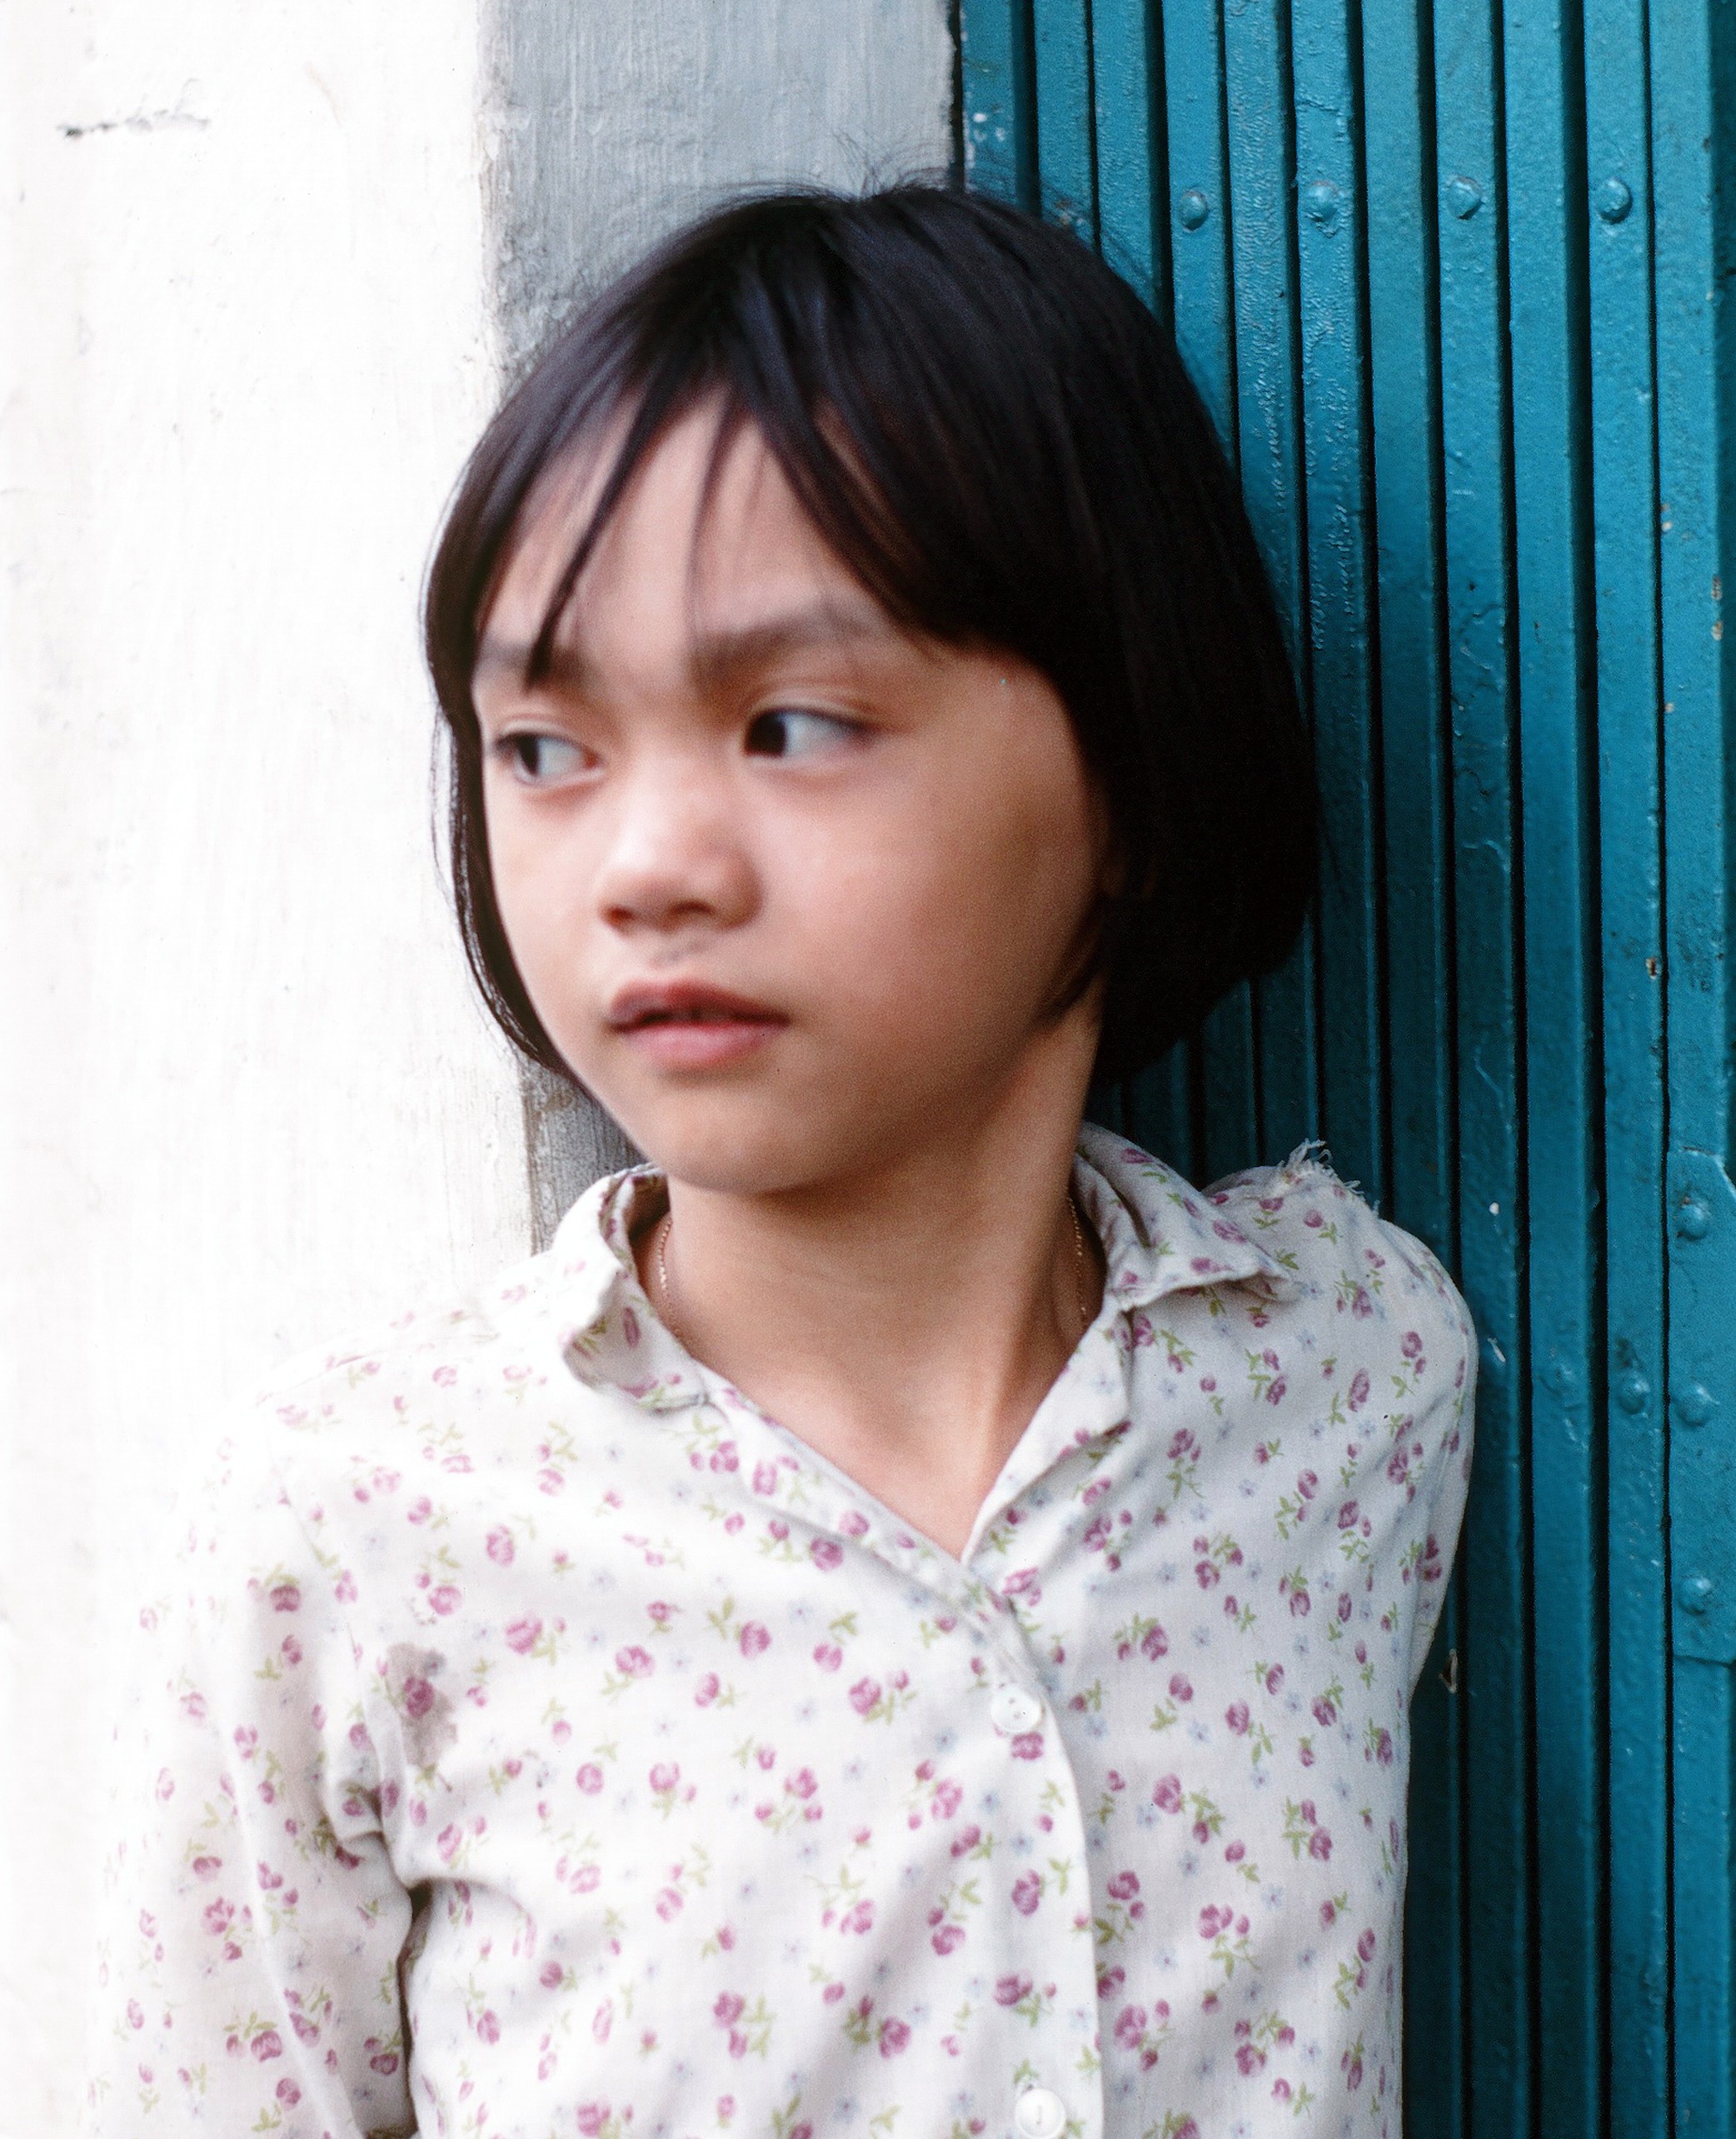 1970 02 01 Saigon kid 01